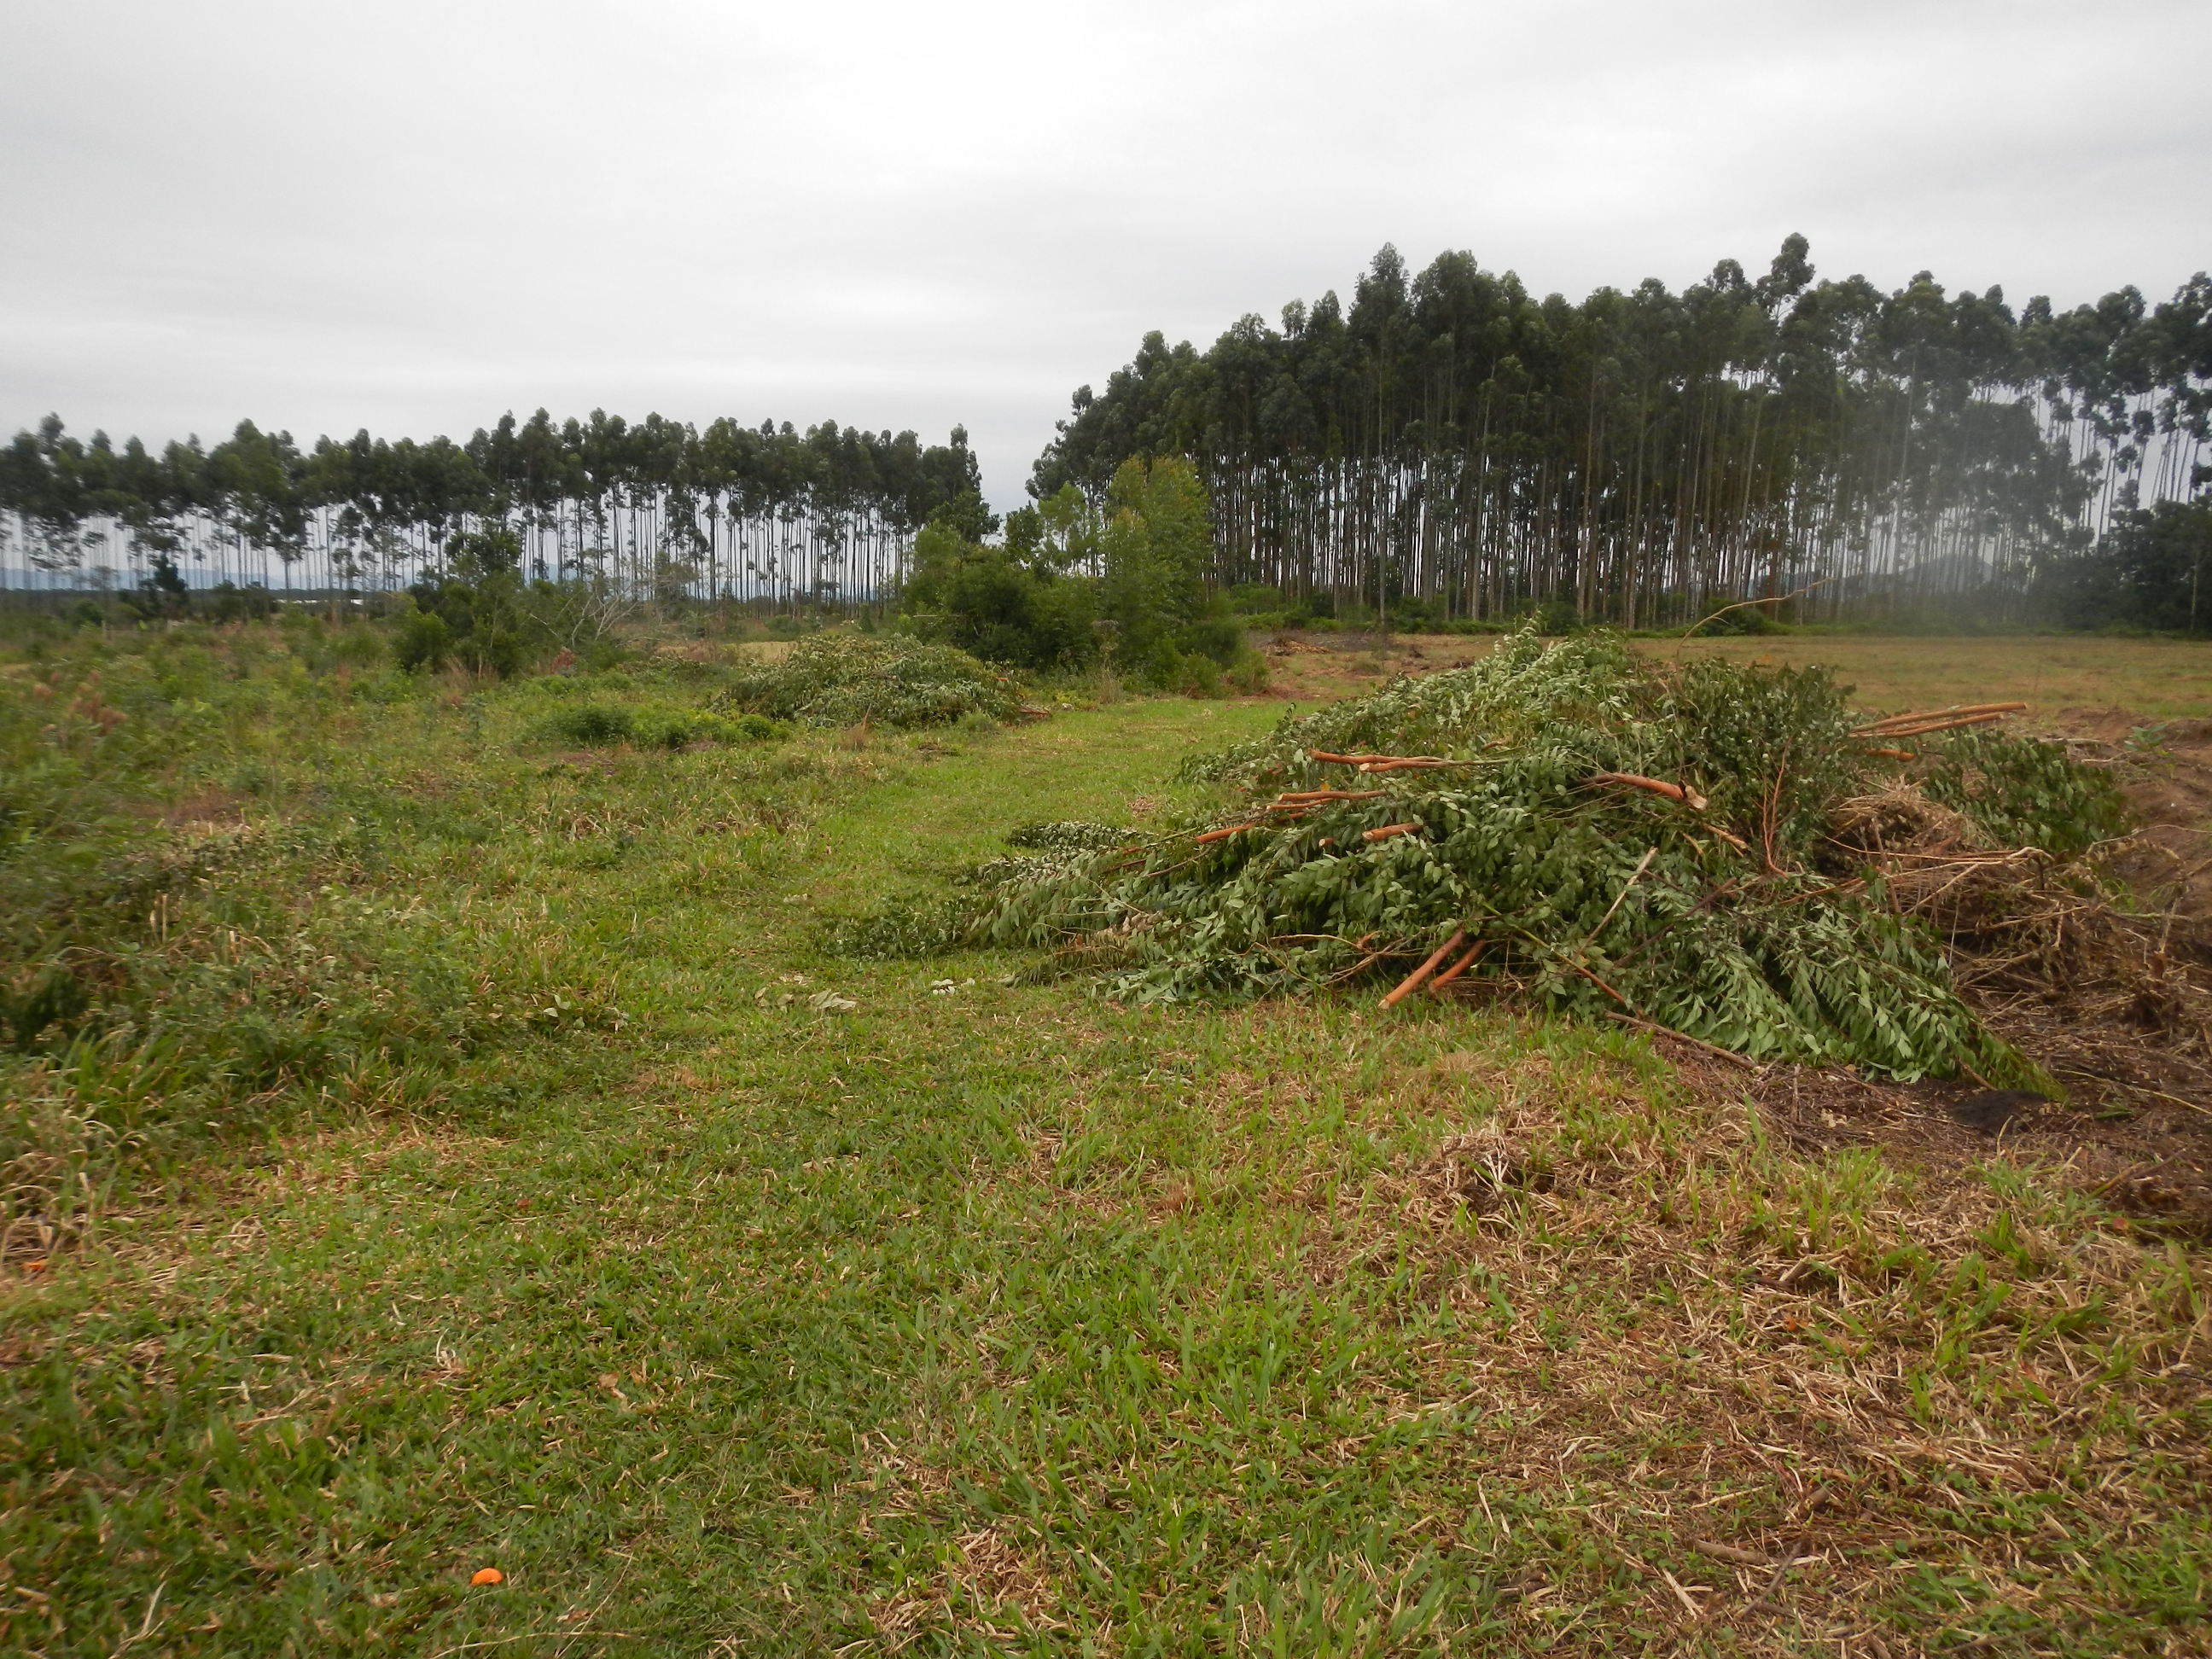 20130701 Fazenda eucaliptos rebrote desbastados.jpg